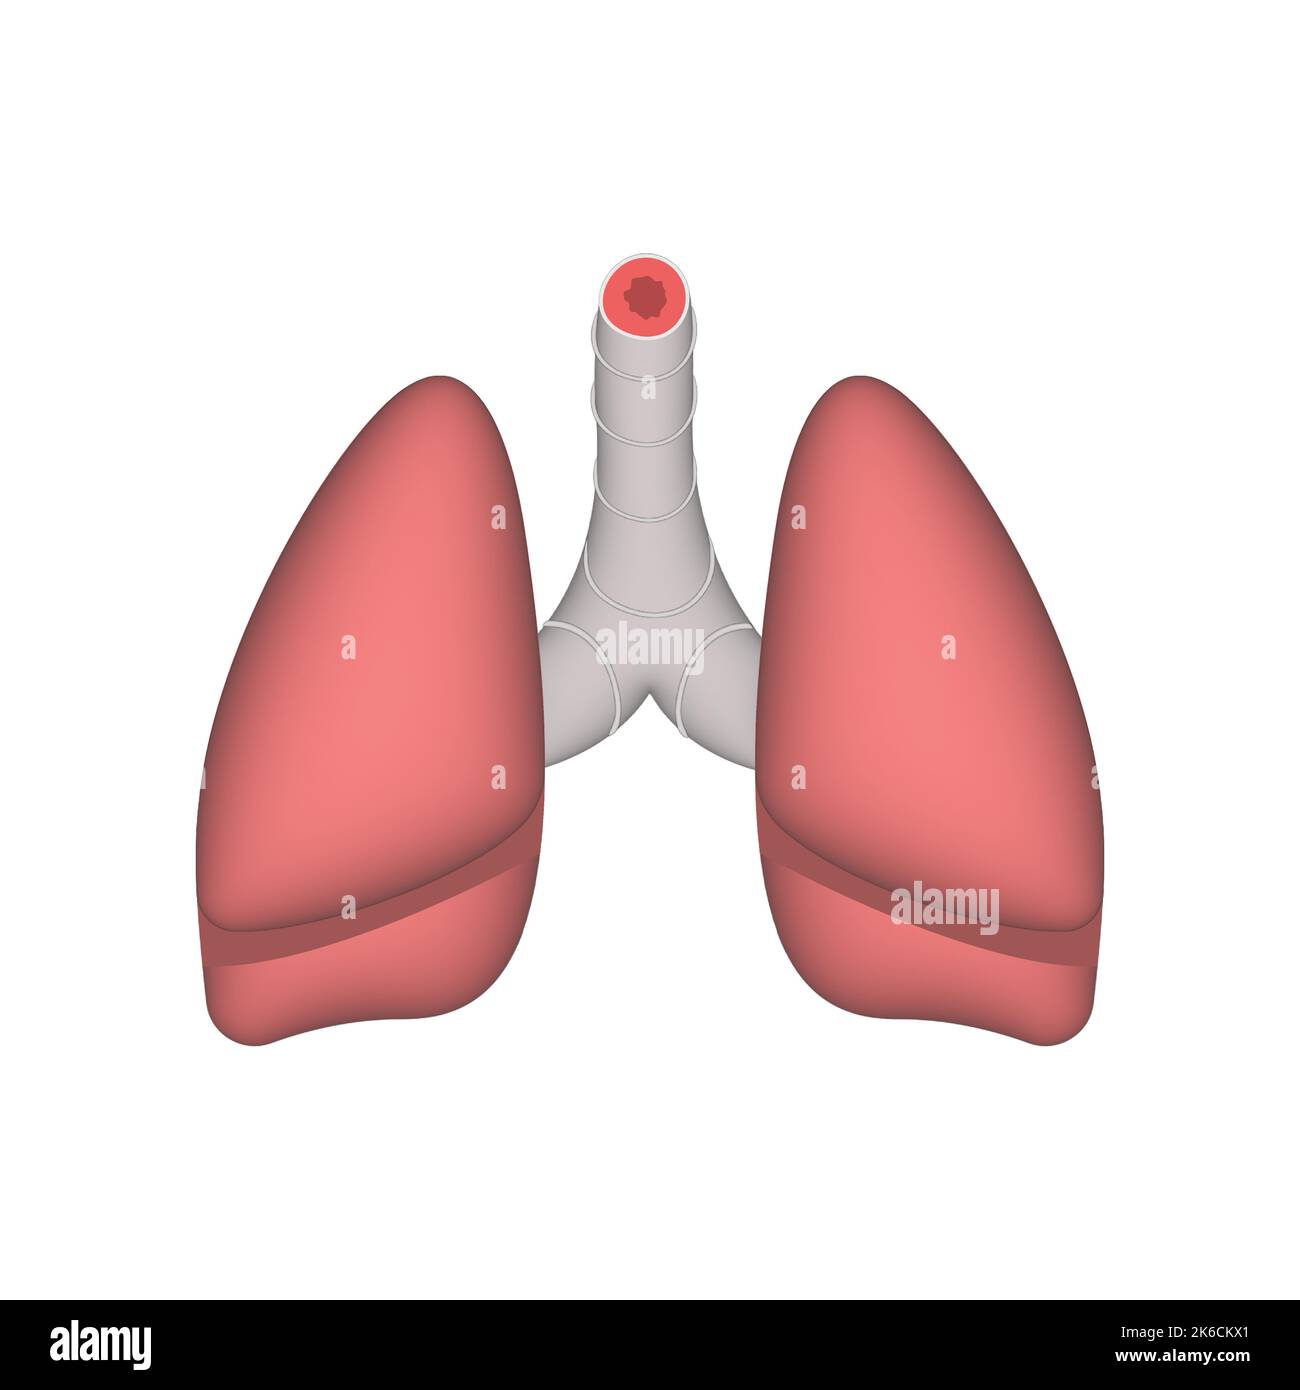 Structure anatomique des poumons humains. Illustration réaliste à 3D vecteurs isolée sur fond blanc Illustration de Vecteur